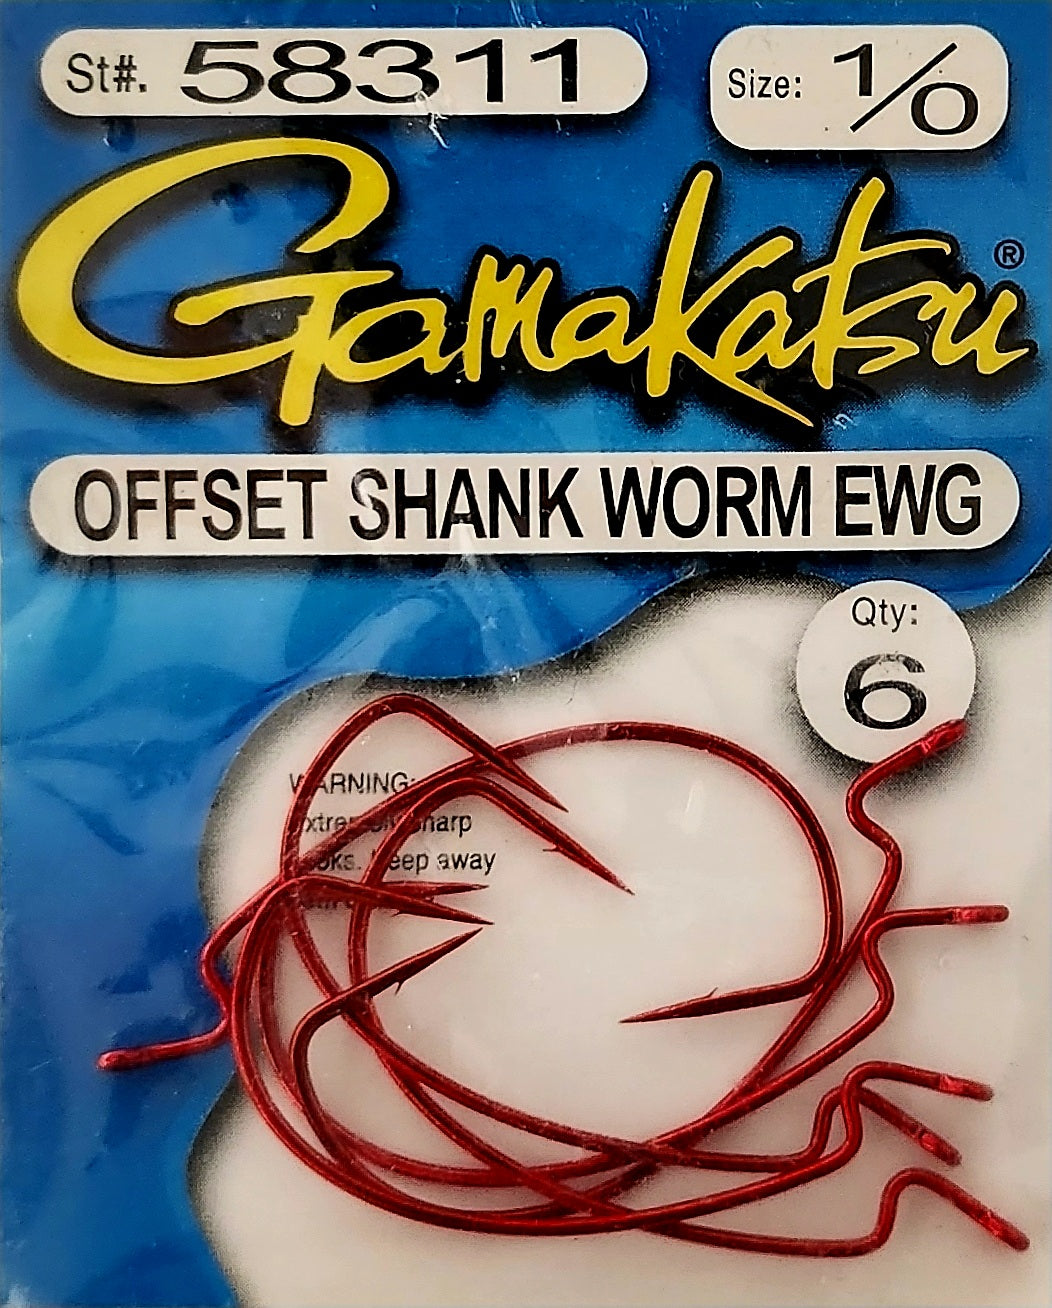 Gamakatsu offset shank worm EWG